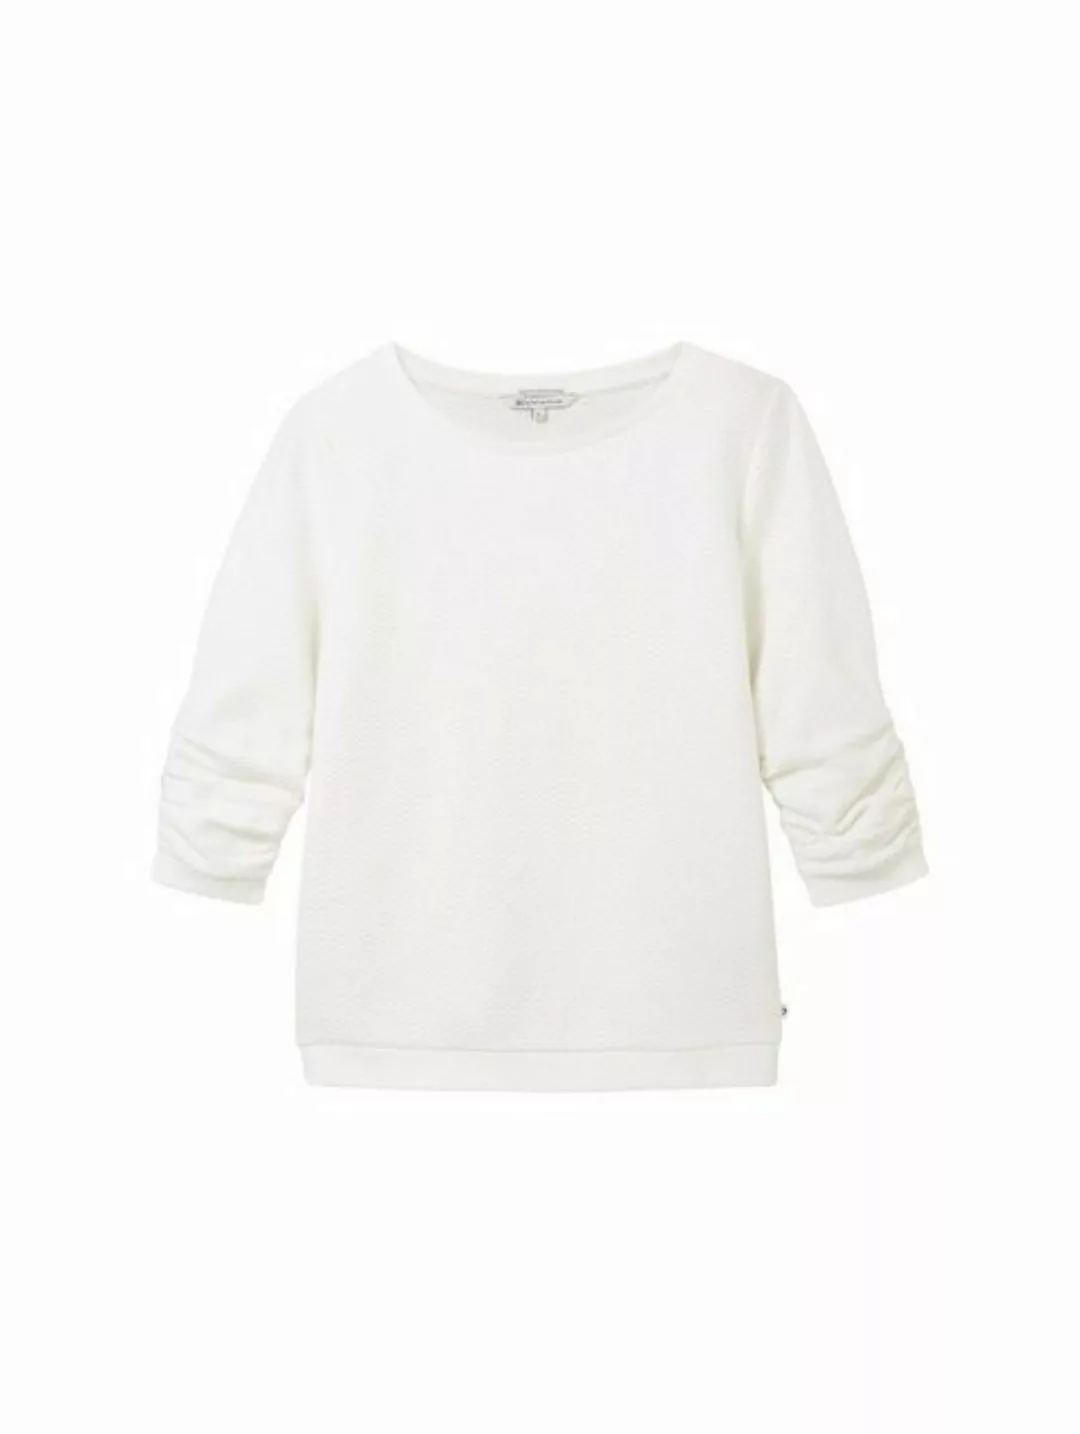 TOM TAILOR Denim T-Shirt structured sweat, off white günstig online kaufen